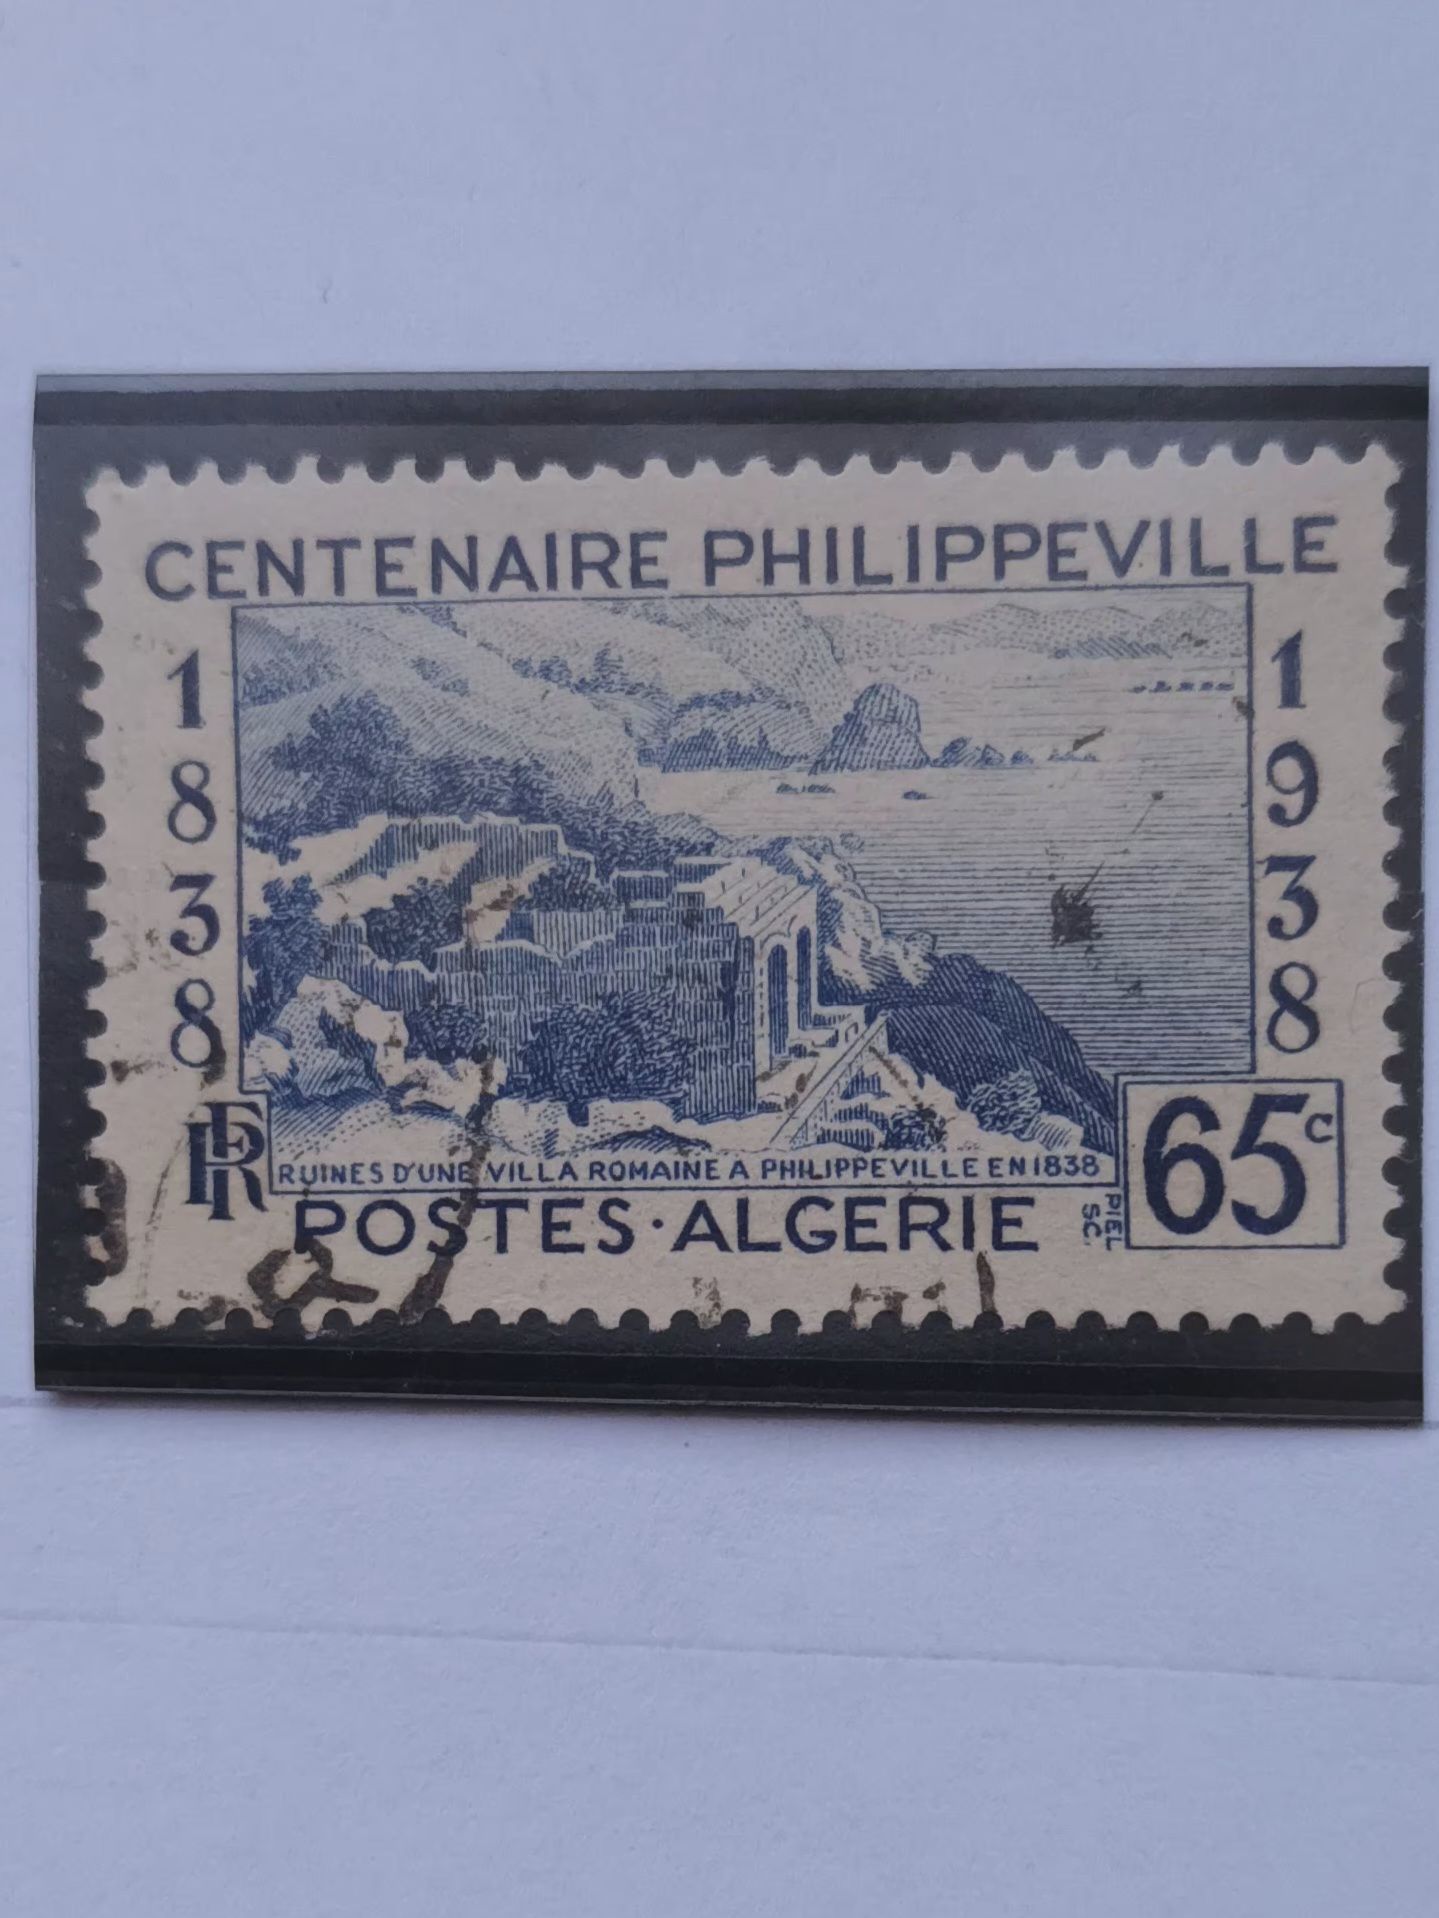 L26 -- TIMBRE OBLITÉRÉ ALGÉRIE, DÉPARTEMENT FRANÇAIS N °143 -- ANNÉE 1938 --" CENTENAIRE DE PHILIPPEVILLE : GOLFE DE STORA ET RUINES DE RUSSICADA".